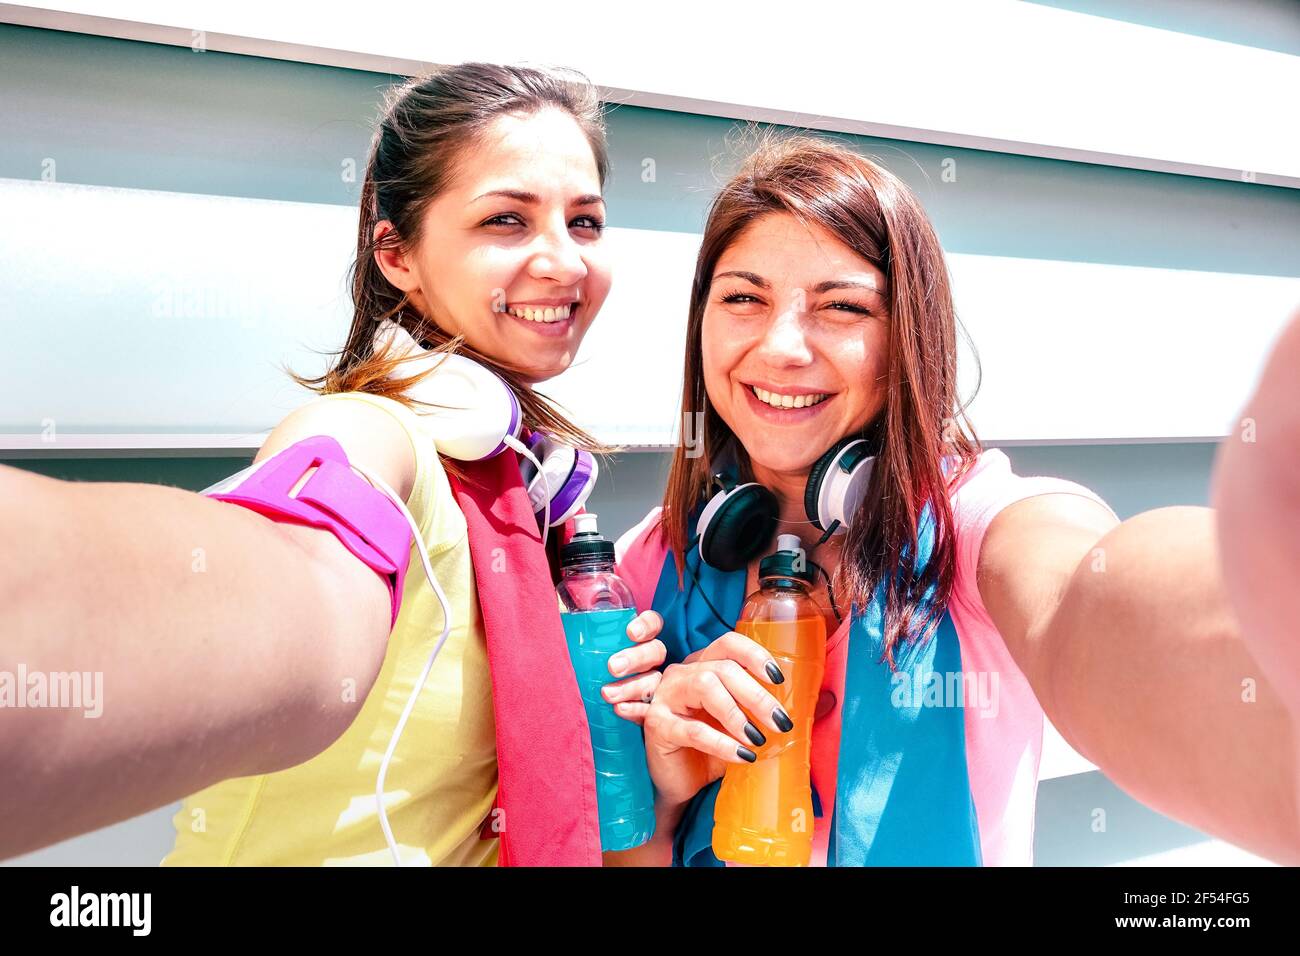 De joyeuses copines qui prennent le selfie en pause lors de l'entraînement à la course Zone urbaine - jeunes femmes heureux s'amuser avec entraînement de jogging de fitness Banque D'Images